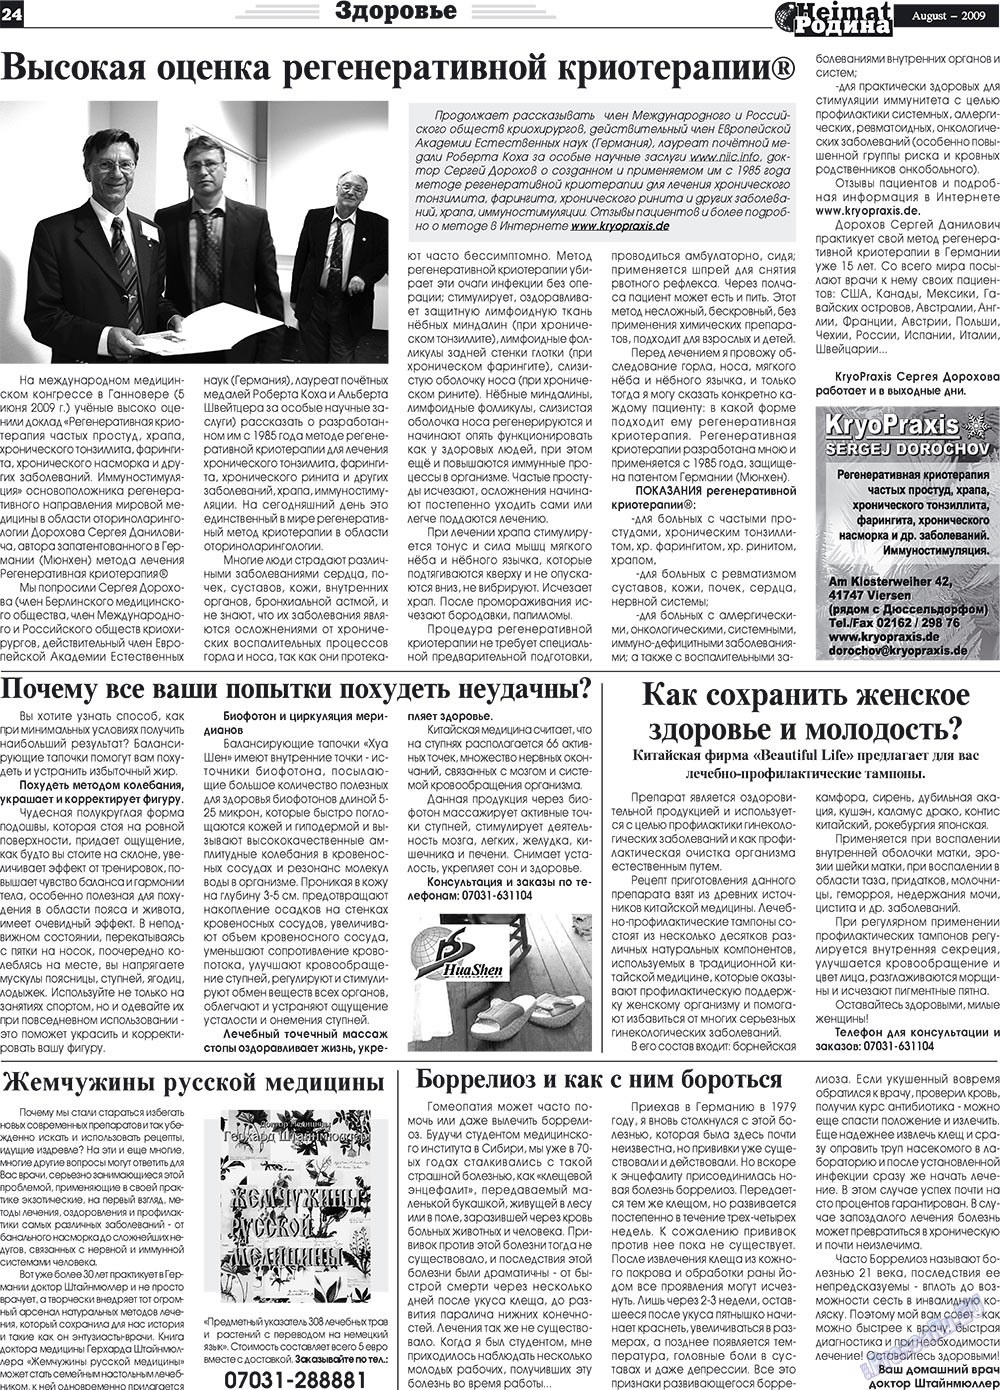 Heimat-Родина (газета). 2009 год, номер 8, стр. 24